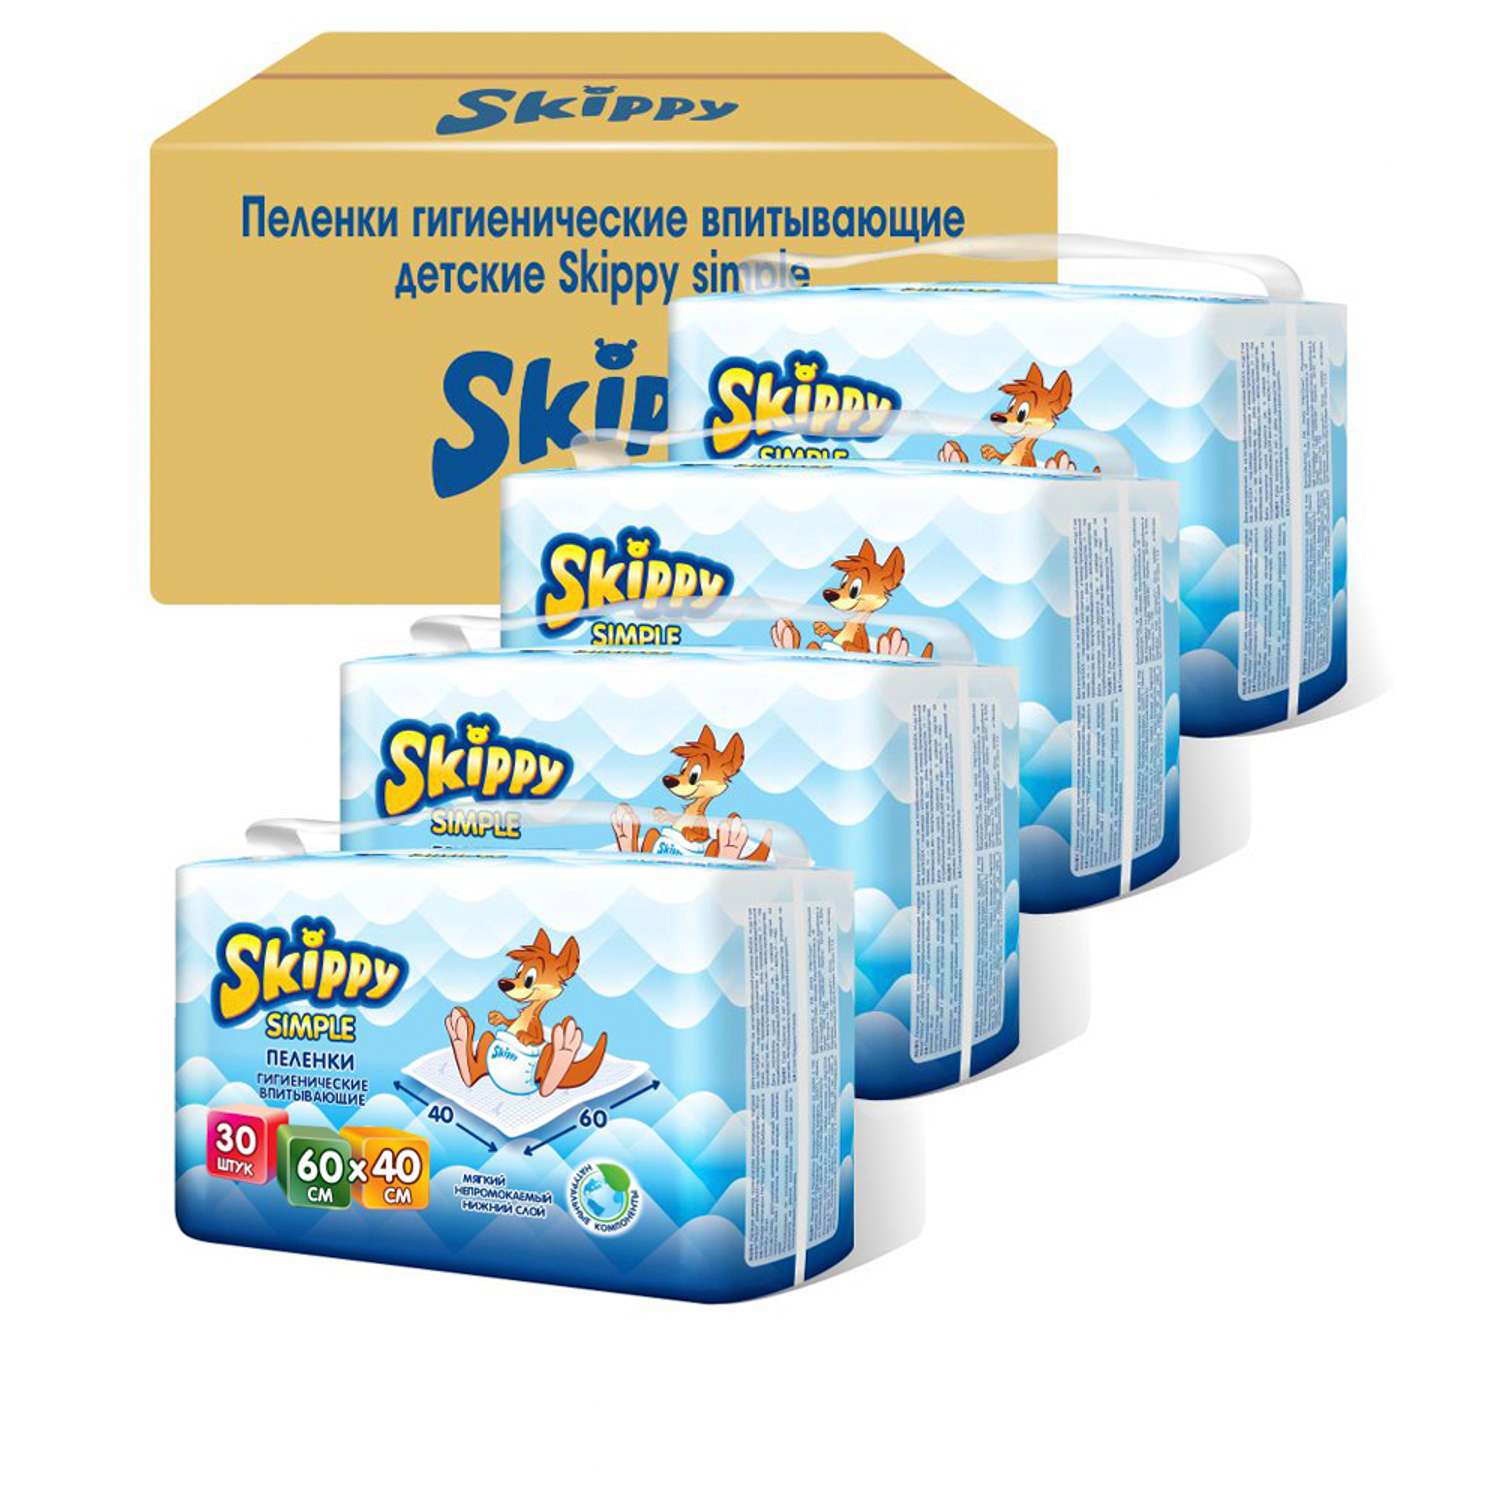 Пеленки детские гигиенические Skippy впитывающие Simple 60x40 см 4 упаковки по 30 шт. 8064 - фото 2